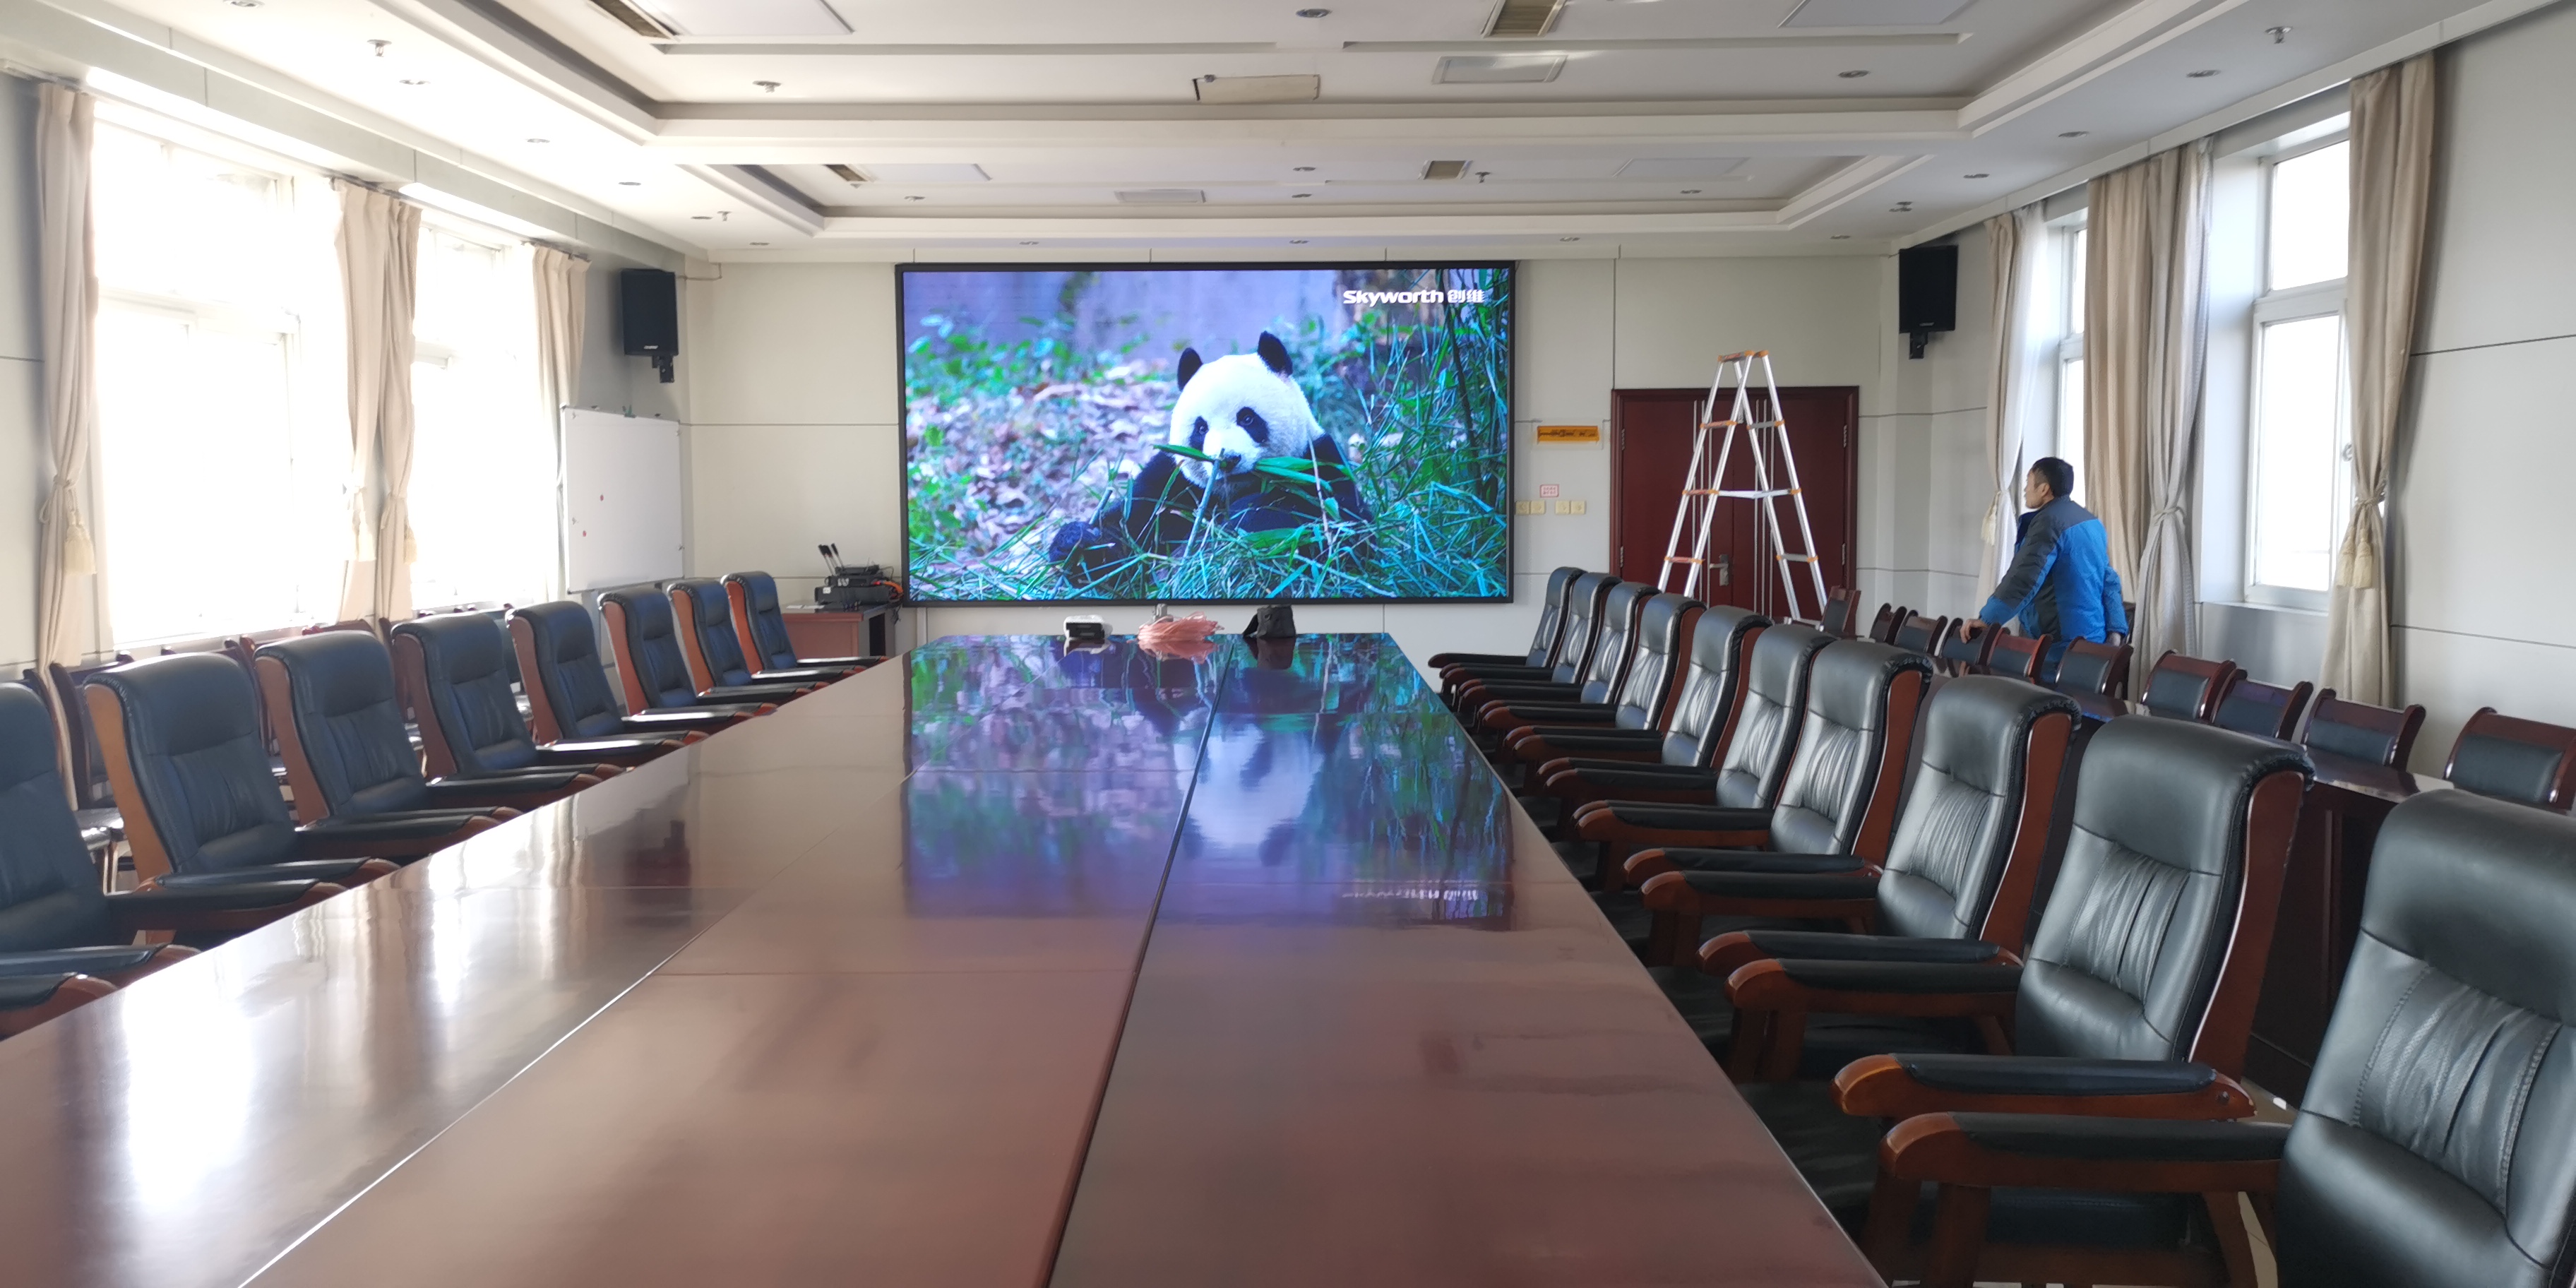 德州齐河赵官能源会议室led显示屏.JPG